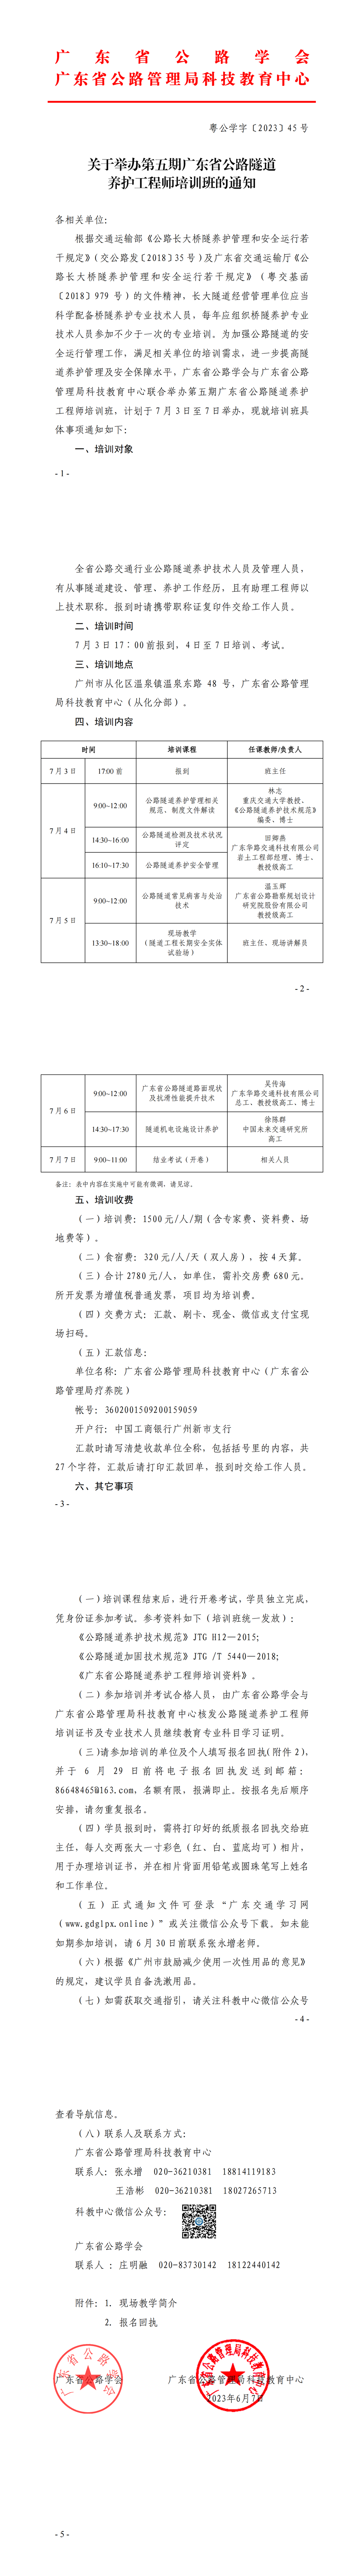 关于举办第五期广东省公路隧道养护工程师培训班的通知_00.png